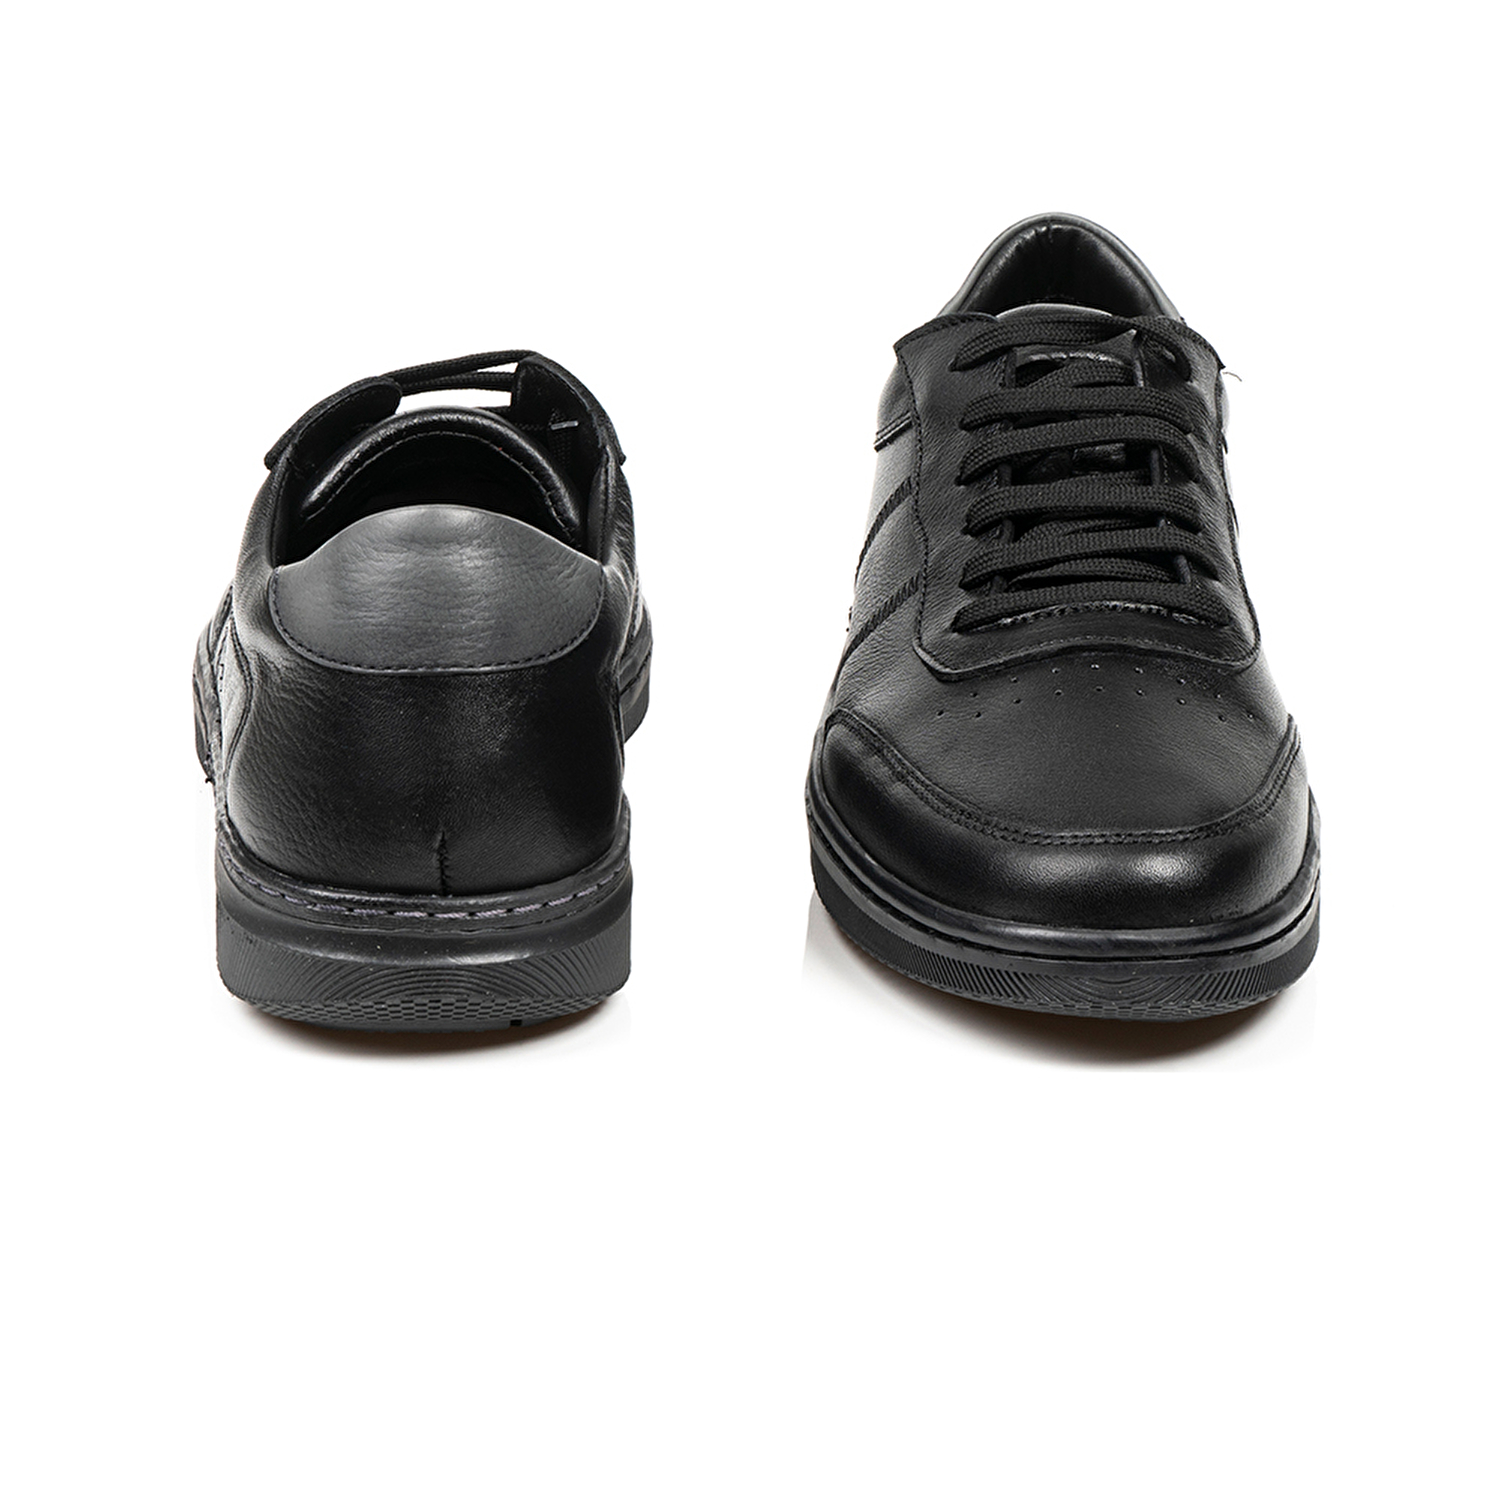 Klasik Erkek Ayakkabı Siyah 67905-4